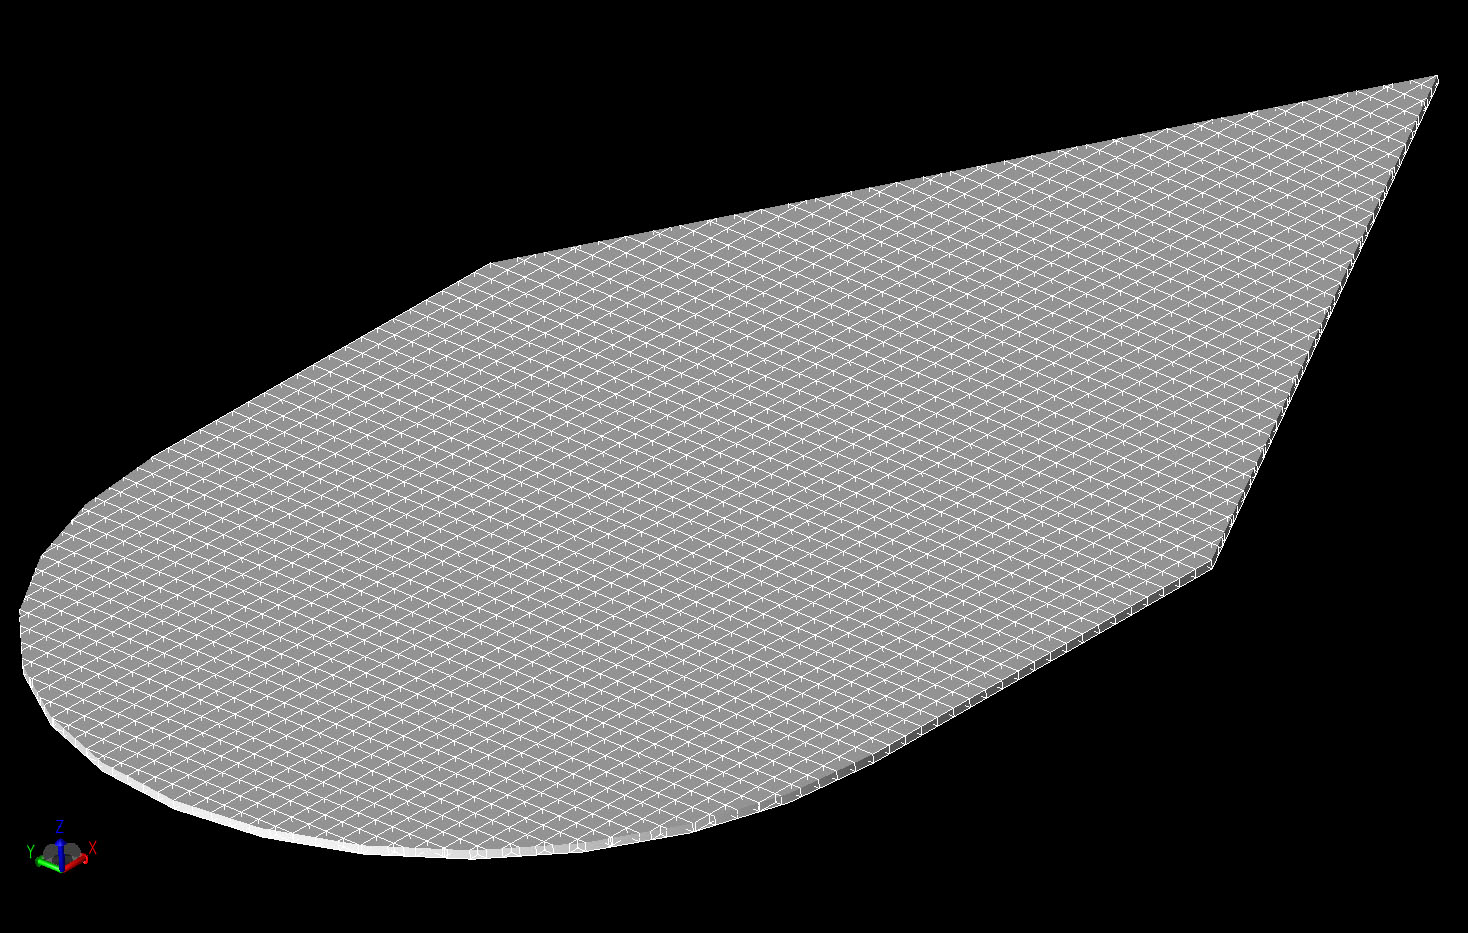 图 5A 楔形板圆柱体几何网格的三维视图。